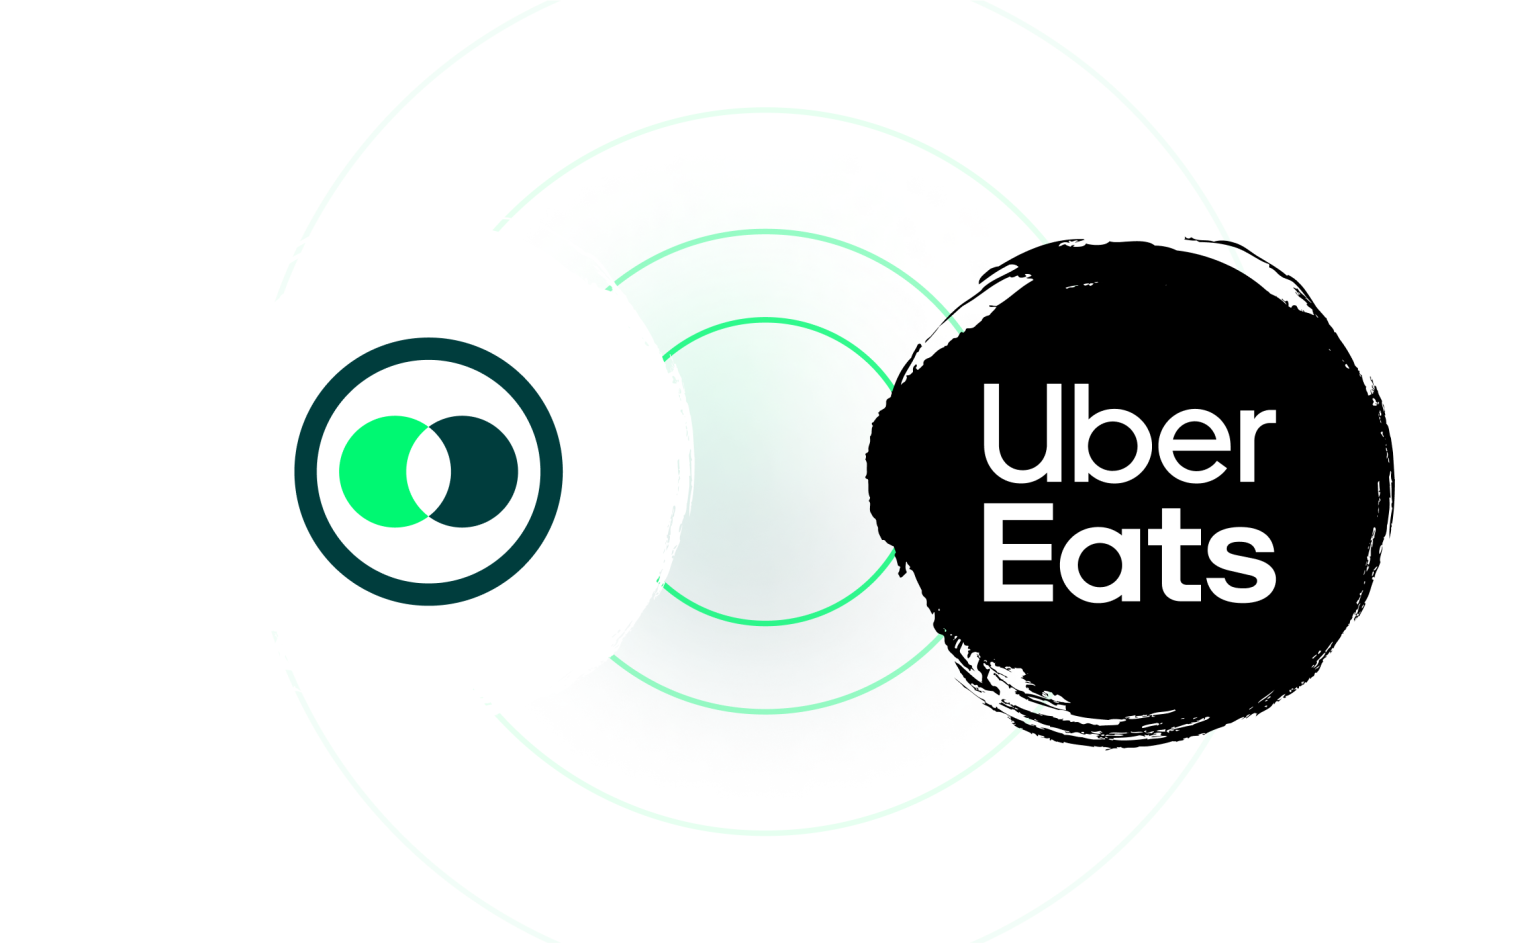 Uber Eat